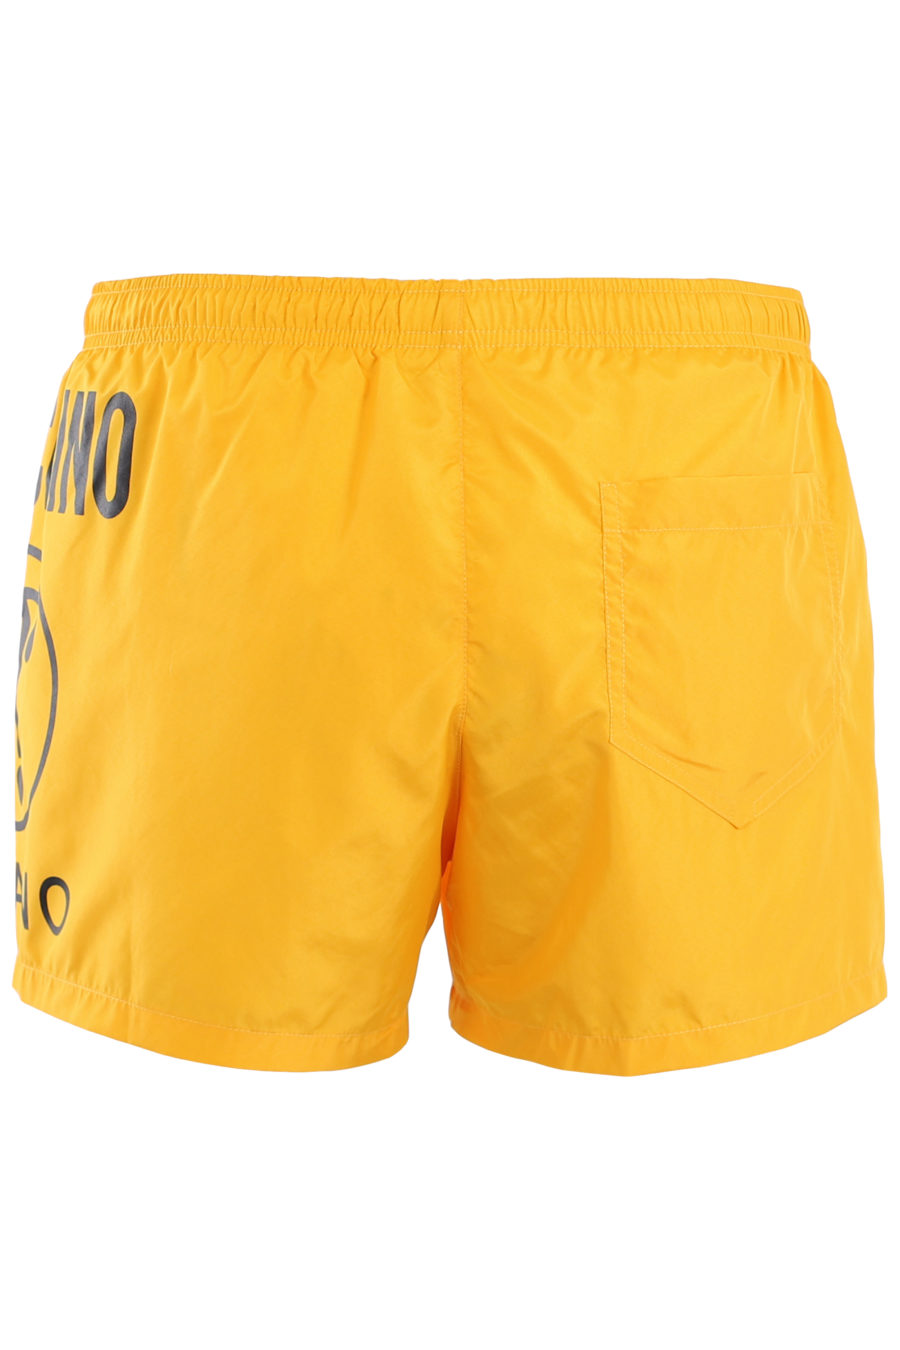 Gelber Badeanzug mit schwarzem Logo, doppelseitige Frage - IMG 9514